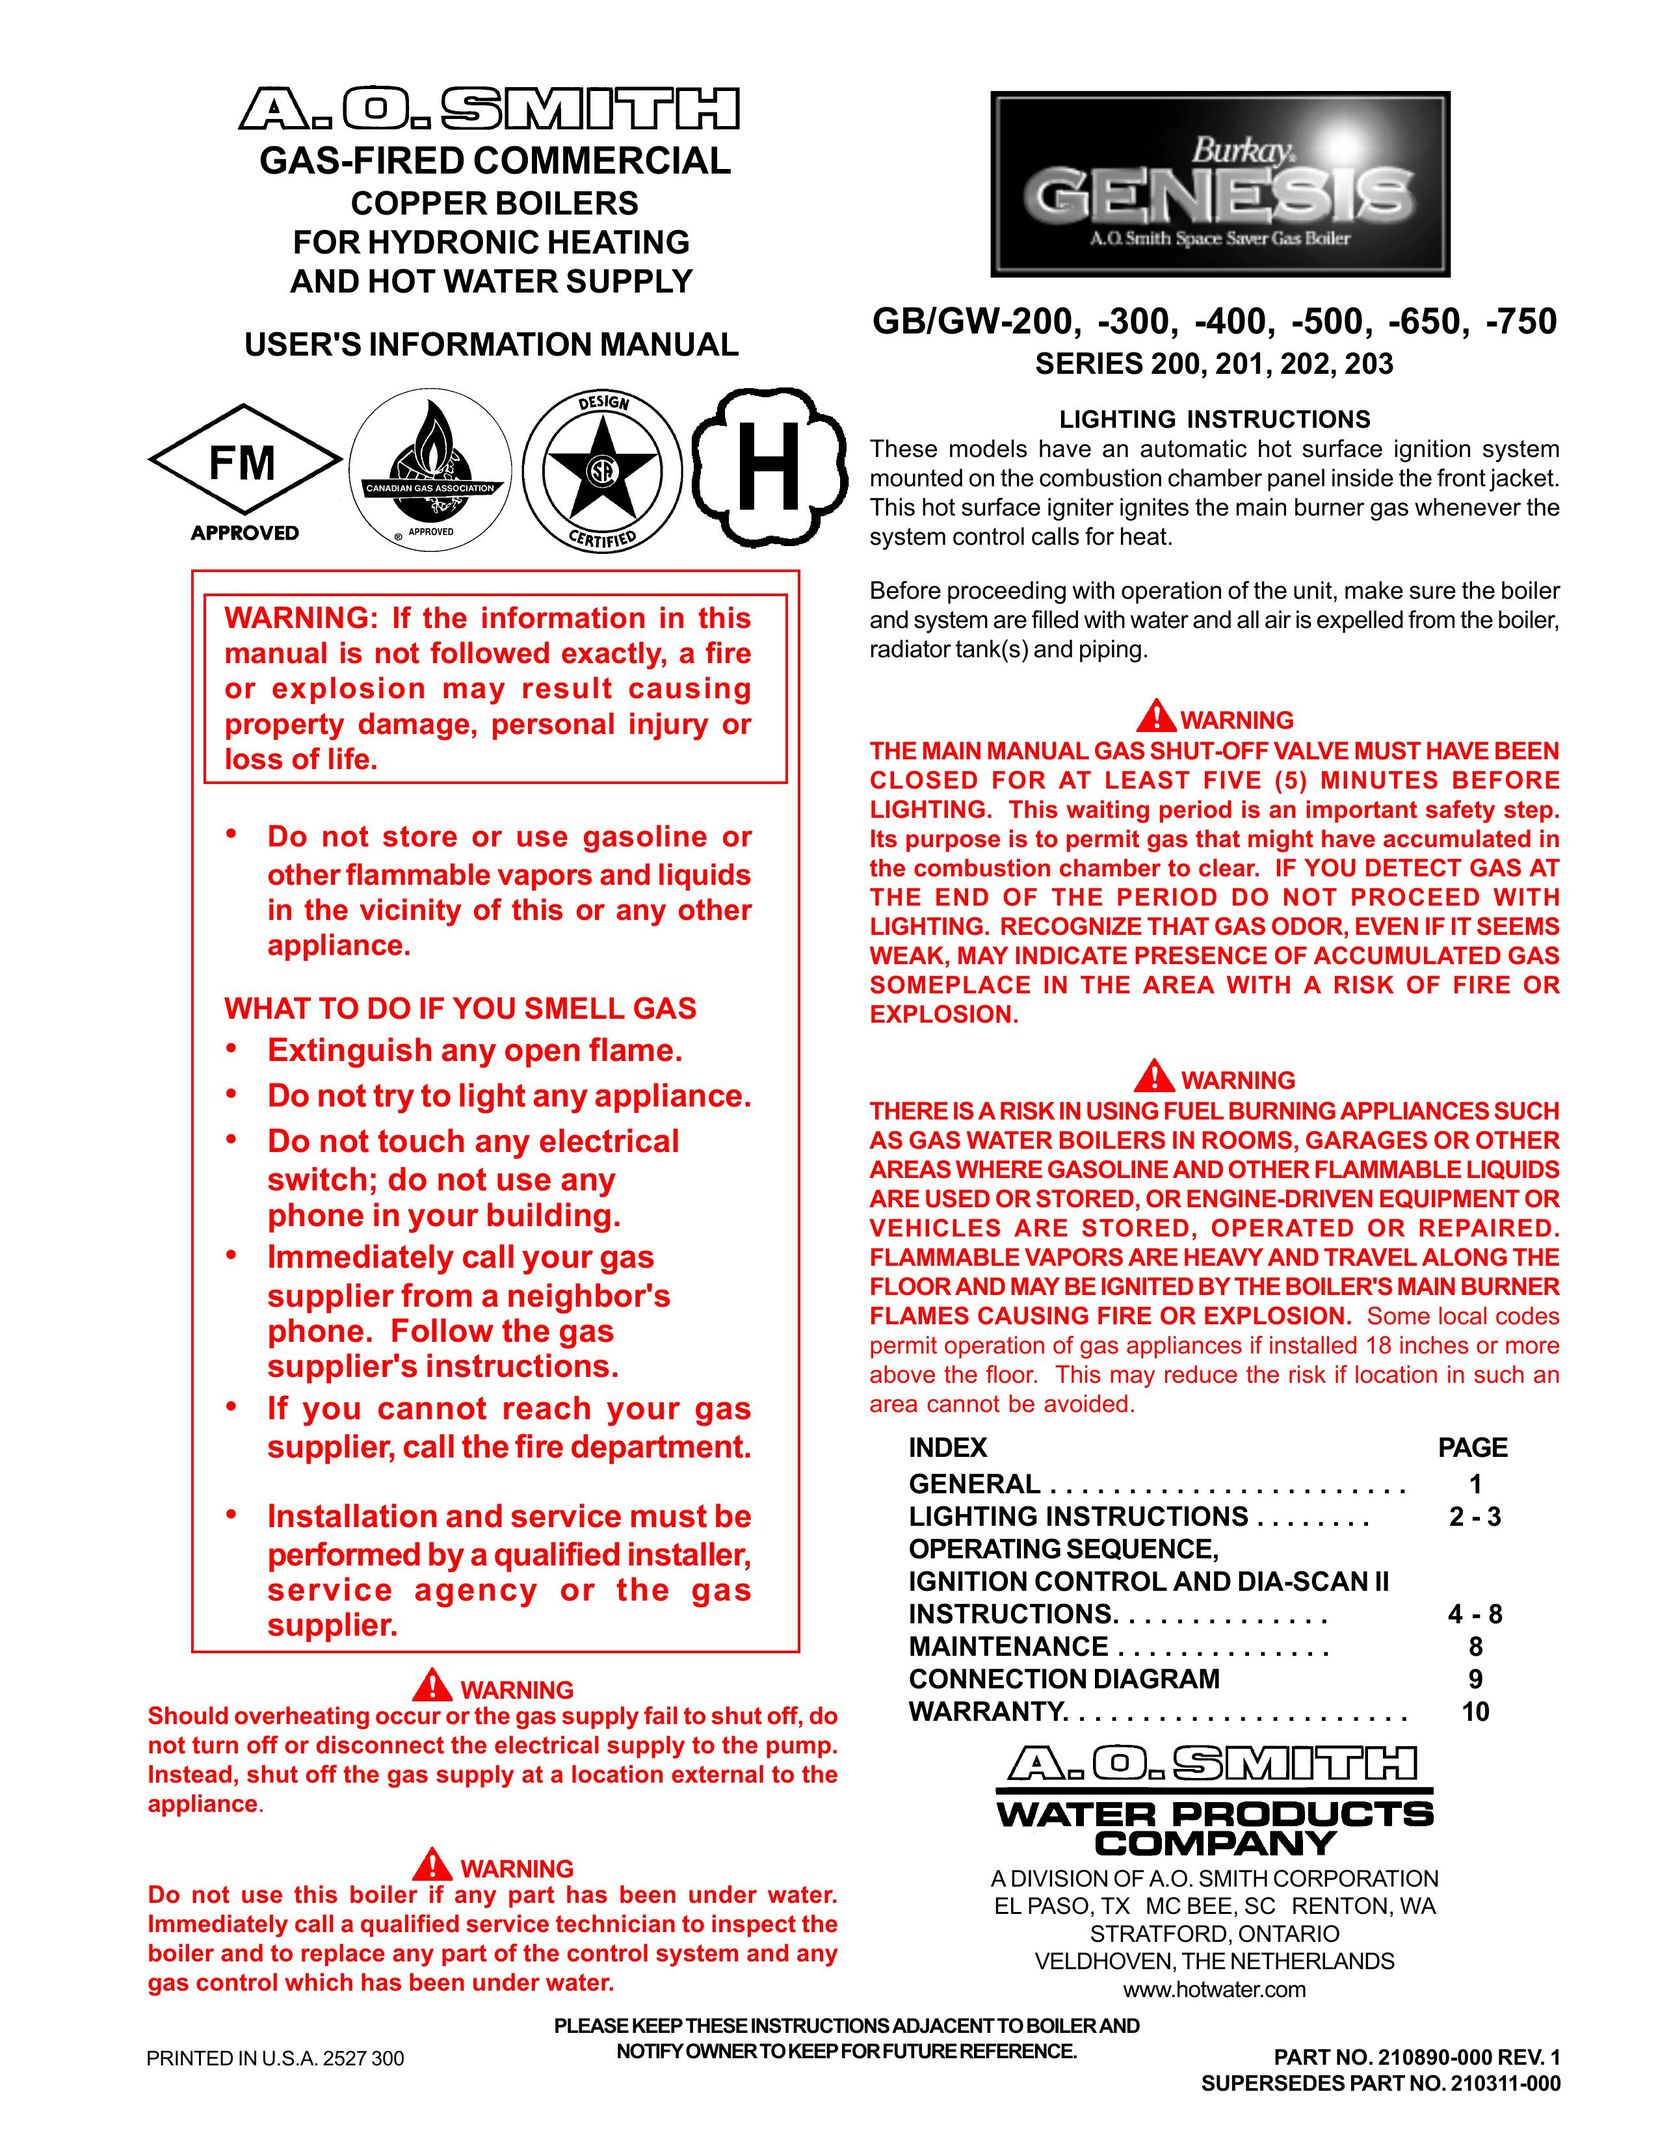 A.O. Smith GB/GW-650 Boiler User Manual